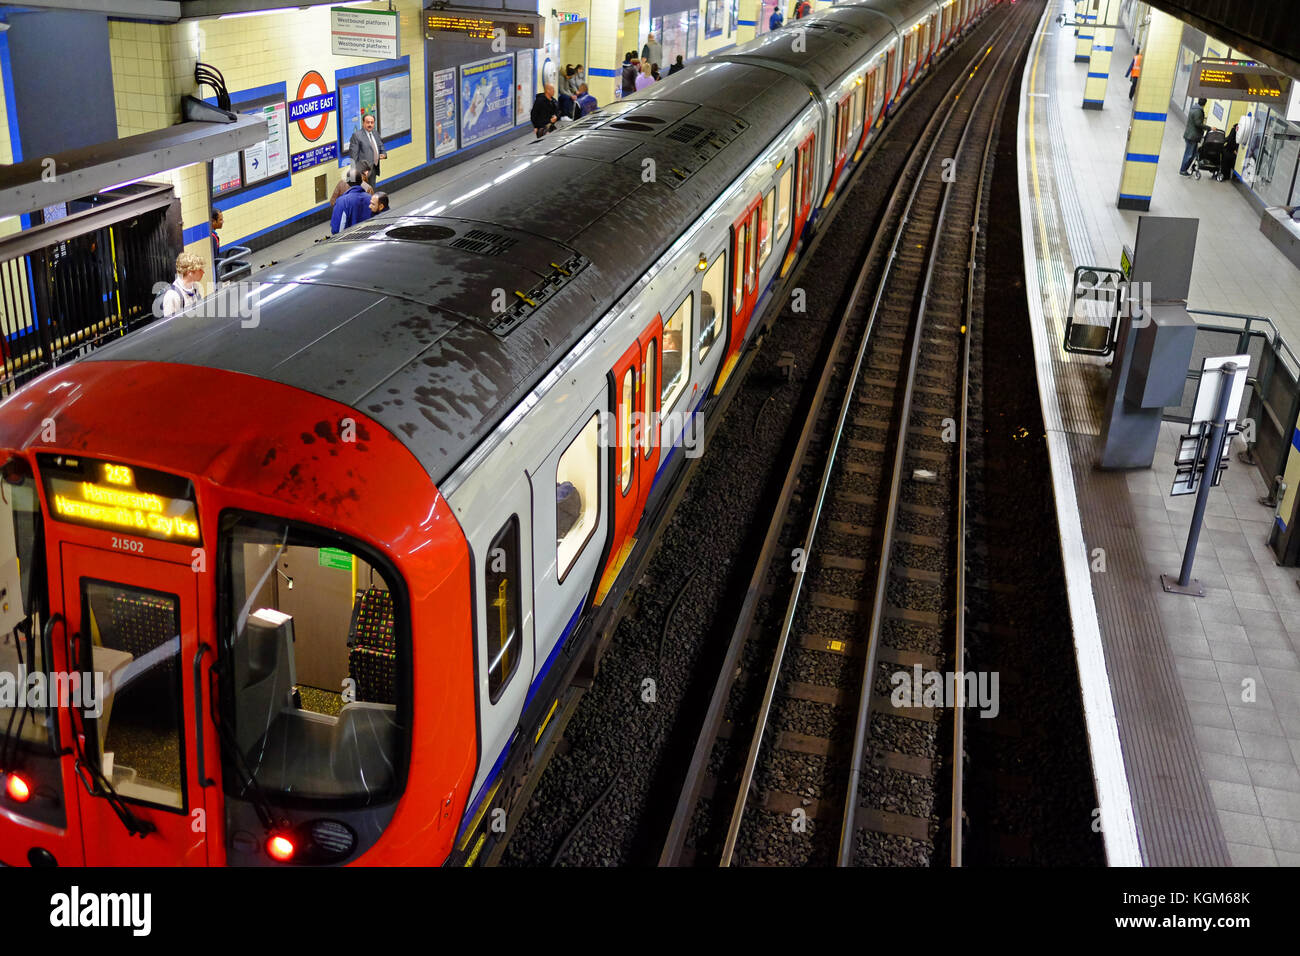 Une rame de métro à la plate-forme de la station Aldgate East sur le système de métro de Londres avec les usagers en attente Banque D'Images